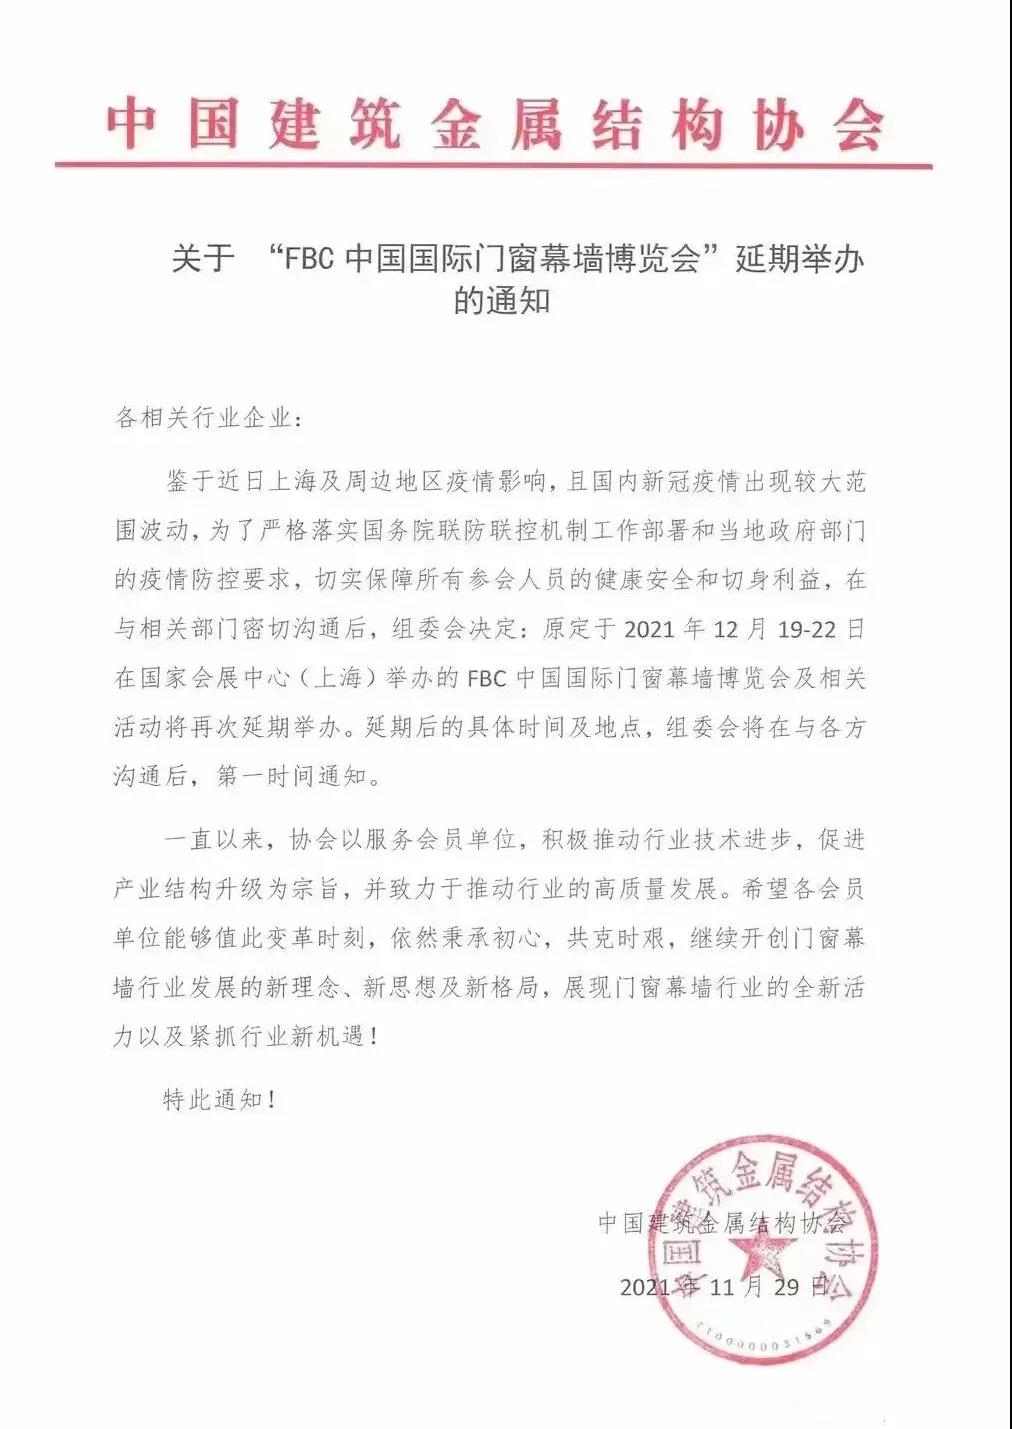 延期通知 I FBC 2021中国国际门窗幕墙博览会再延期